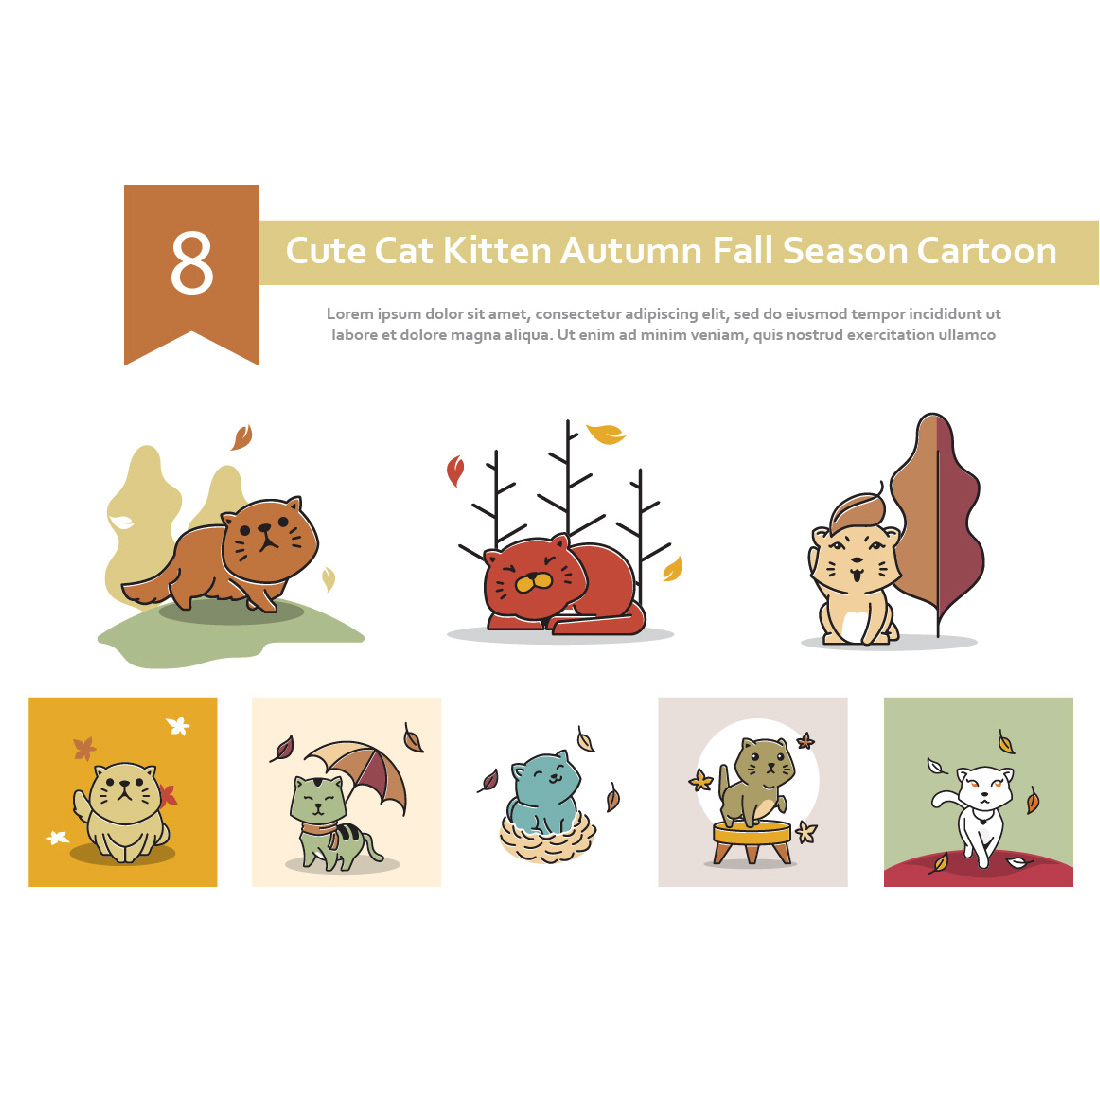 8 Cute Cat Kitten Autumn Fall Season Cartoon cover image.